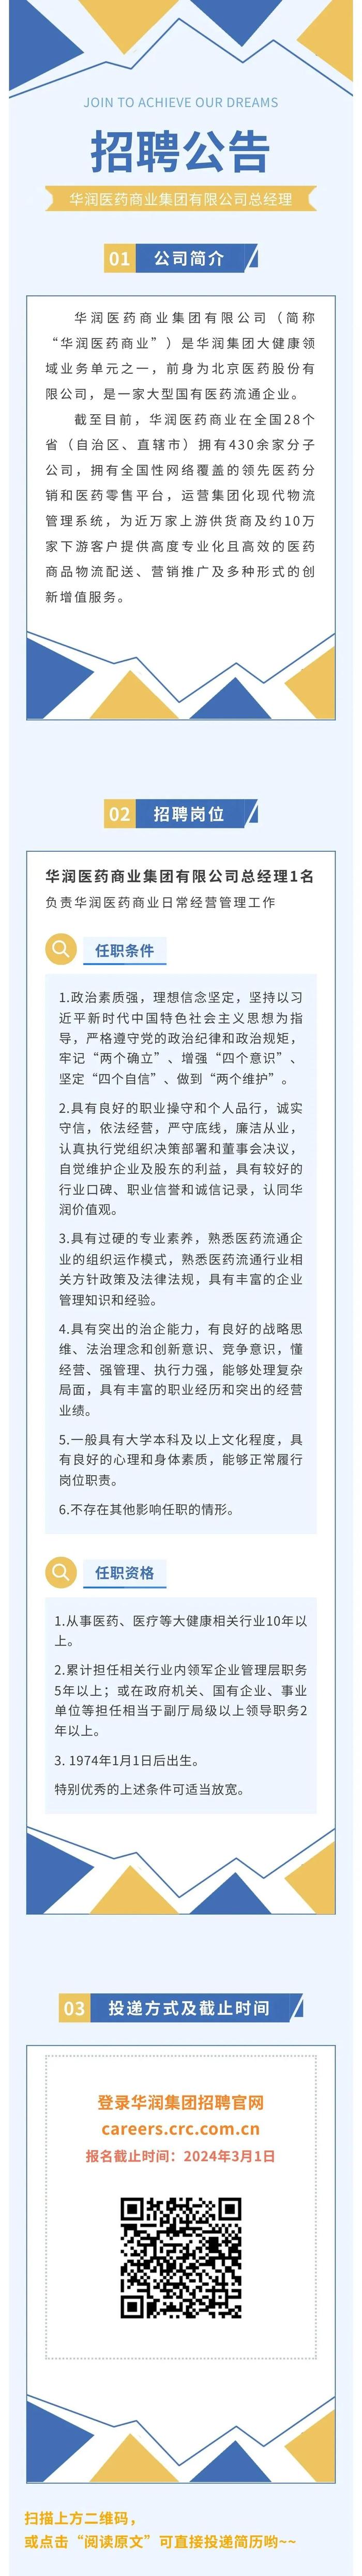 【社招】华润医药商业集团有限公司总经理招聘公告